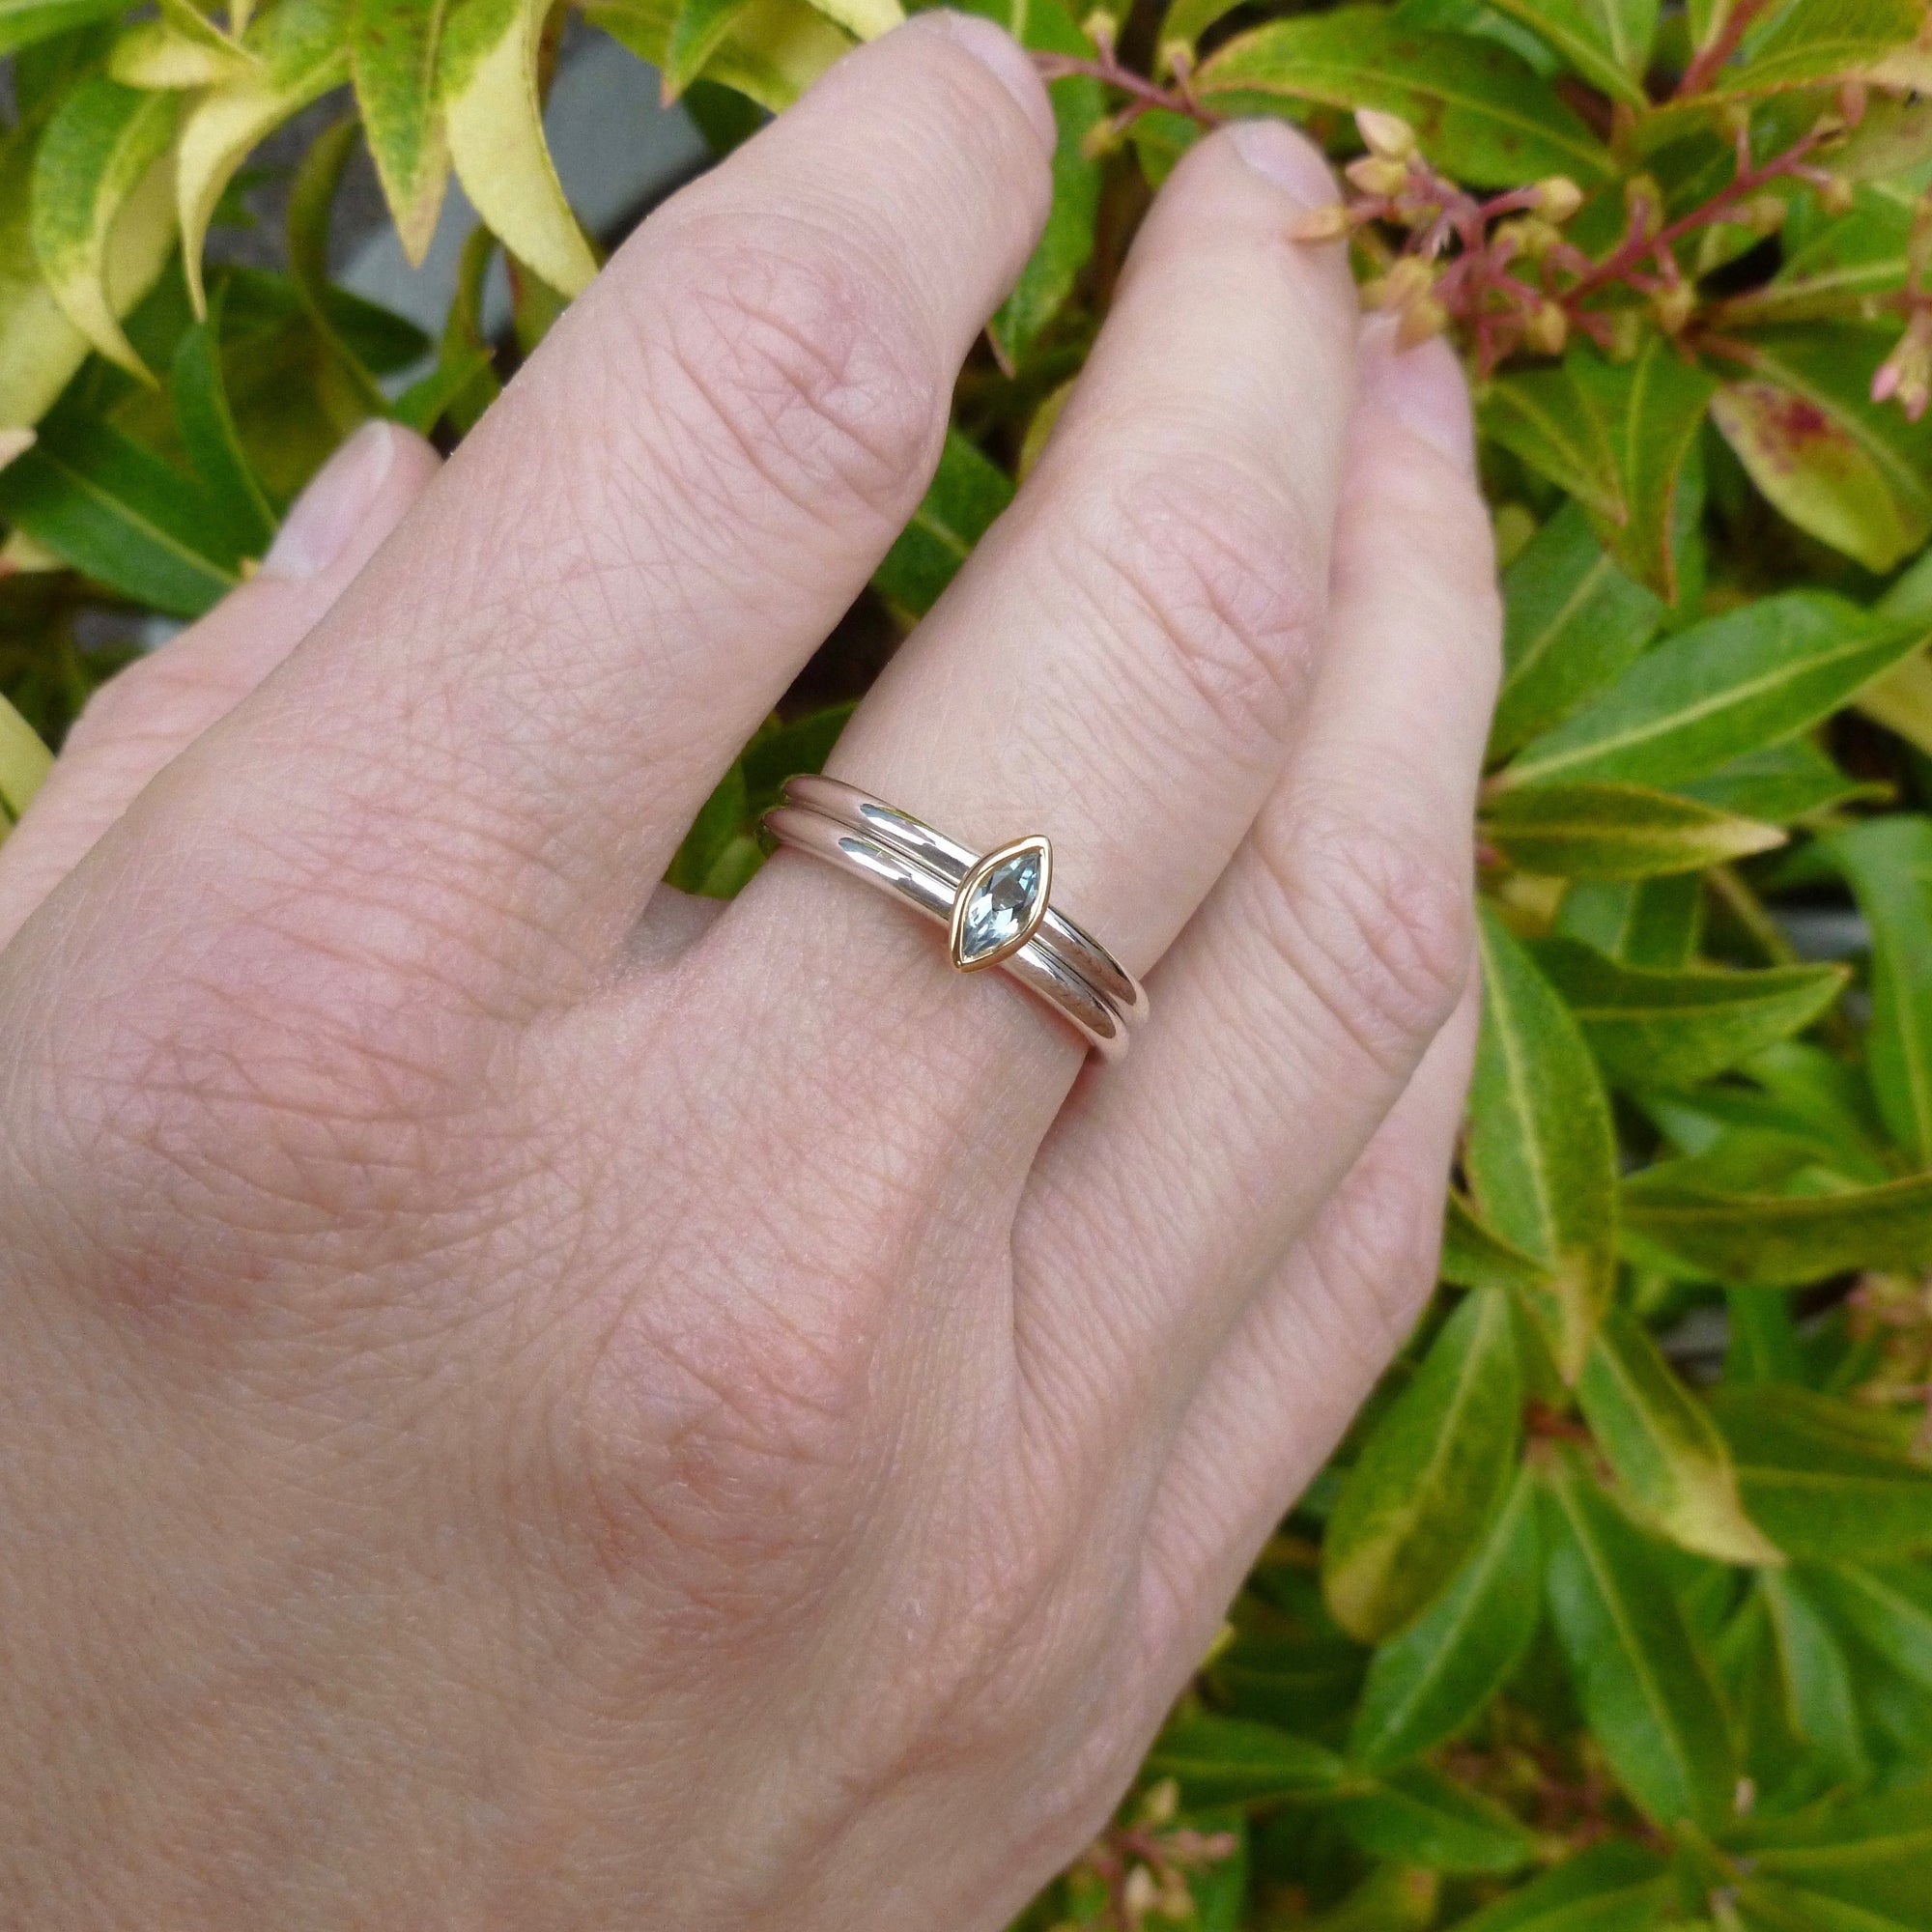 bespoke wedding ring handmade by Uk designer and maker